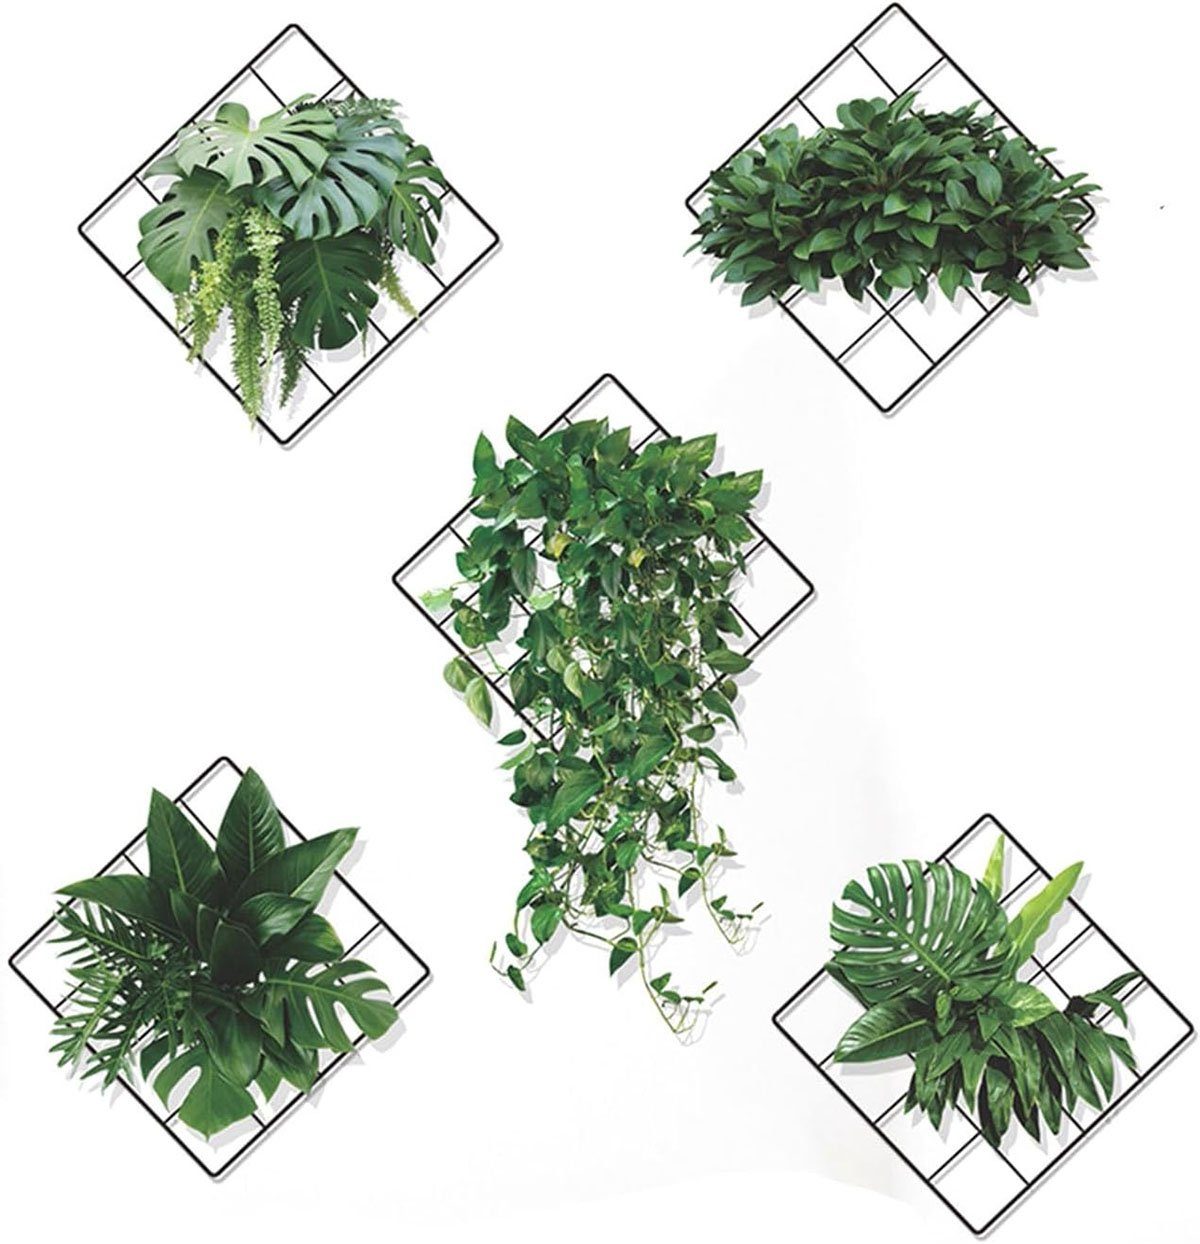 CTGtree Wandtattoo 5 Stück Pflanzen Wandaufkleber Grünen Stehaufe 3D